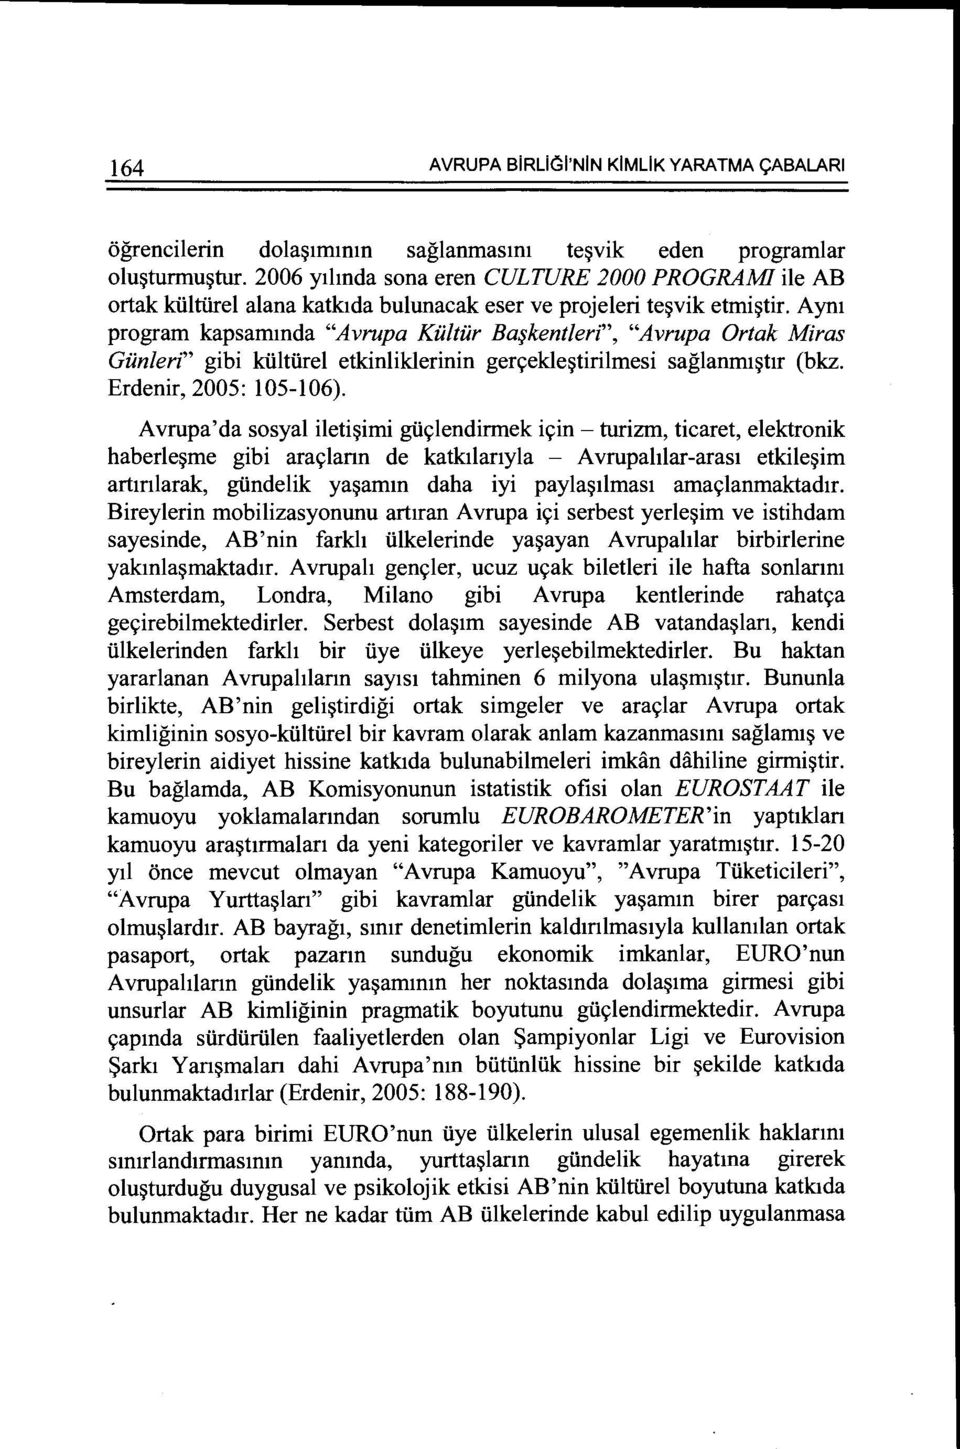 Aym program kapsammda "Avrupa Killtilr Ba~kentleri", "Avrupa Ortak Miras Giinleri" gibi kiiltiirel etkinliklerinin gen;ekle~tirilmesi saglanm1~tlr (bkz. Erdenir, 2005: 105-106).